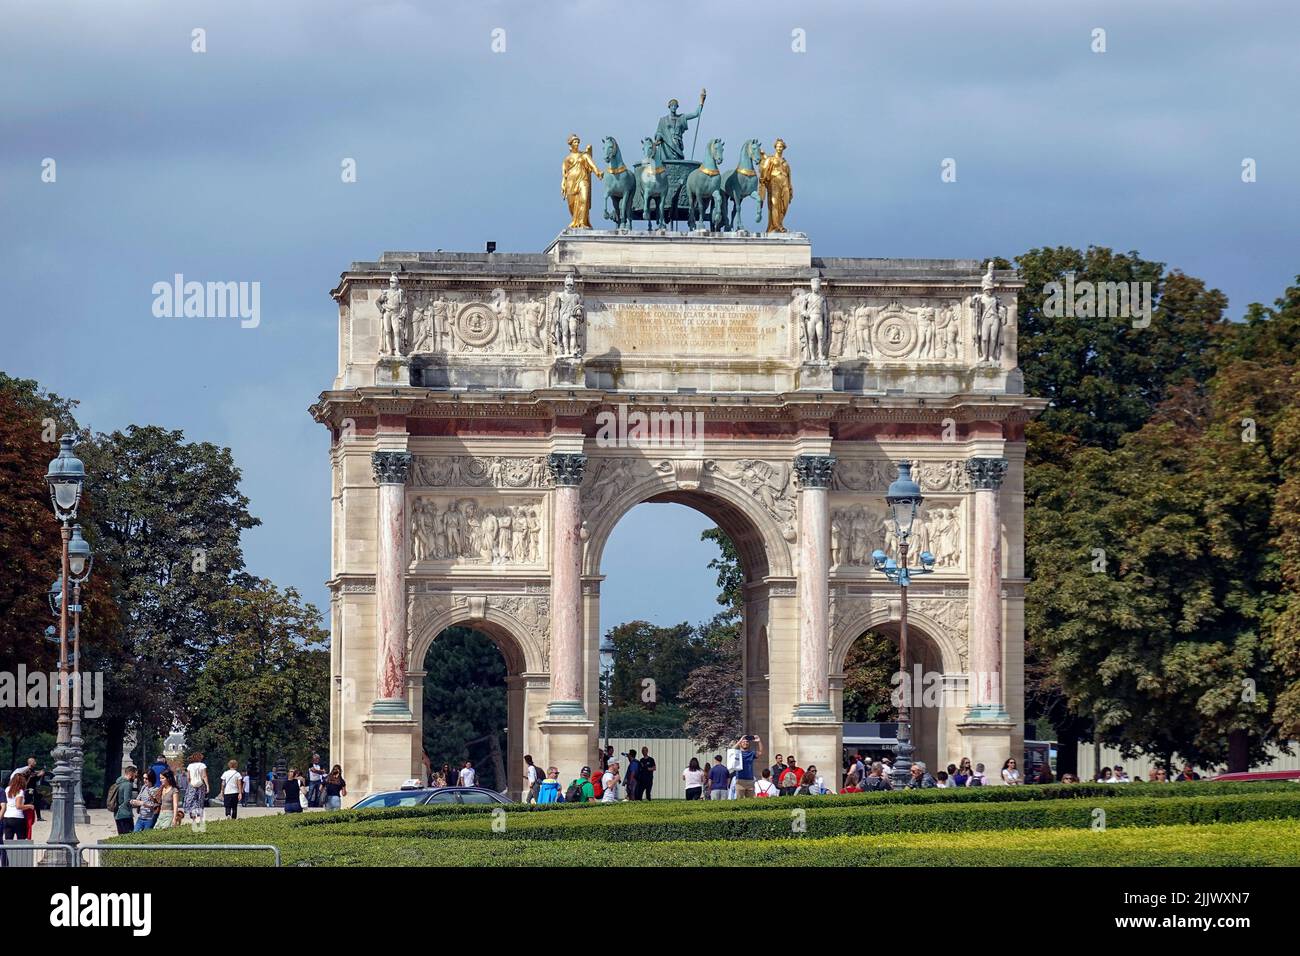 France, Paris, l'Arc de Triomphe du carrousel est une arche triomphale de Paris, située sur la place du carrousel. C'est un exemple d'arche néoclassique Banque D'Images